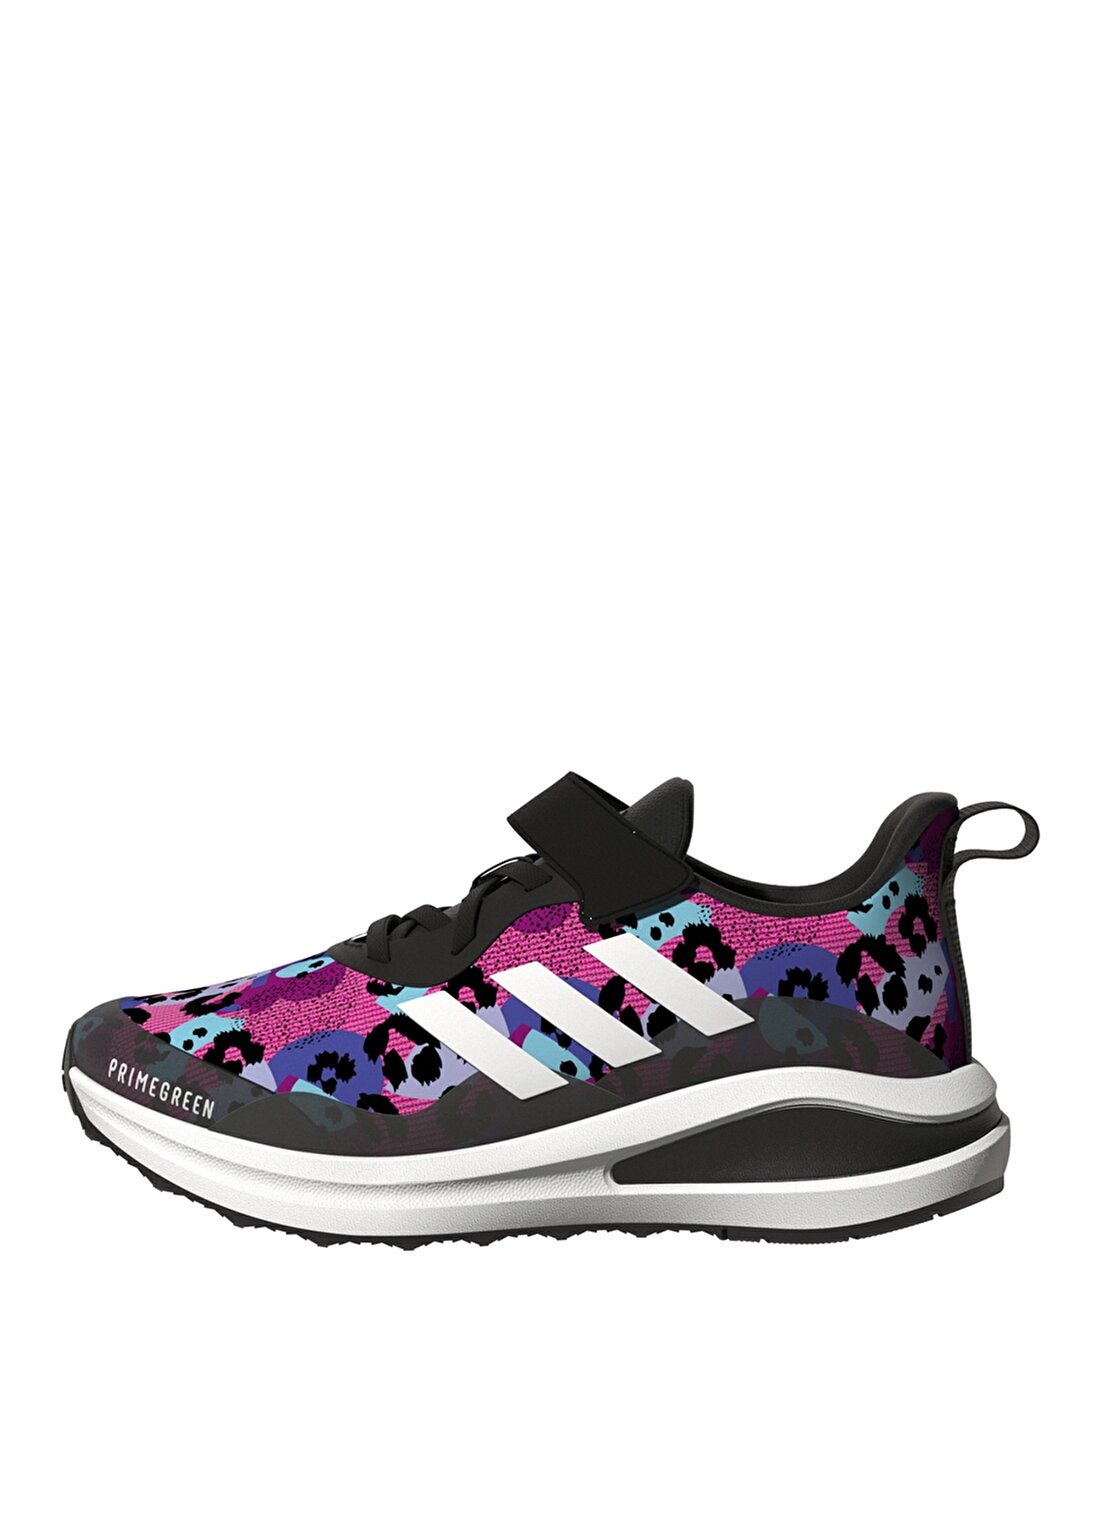 Adidas Fortarun El K Mor - Beyaz Kız Çocuk Yürüyüş Ayakkabısı